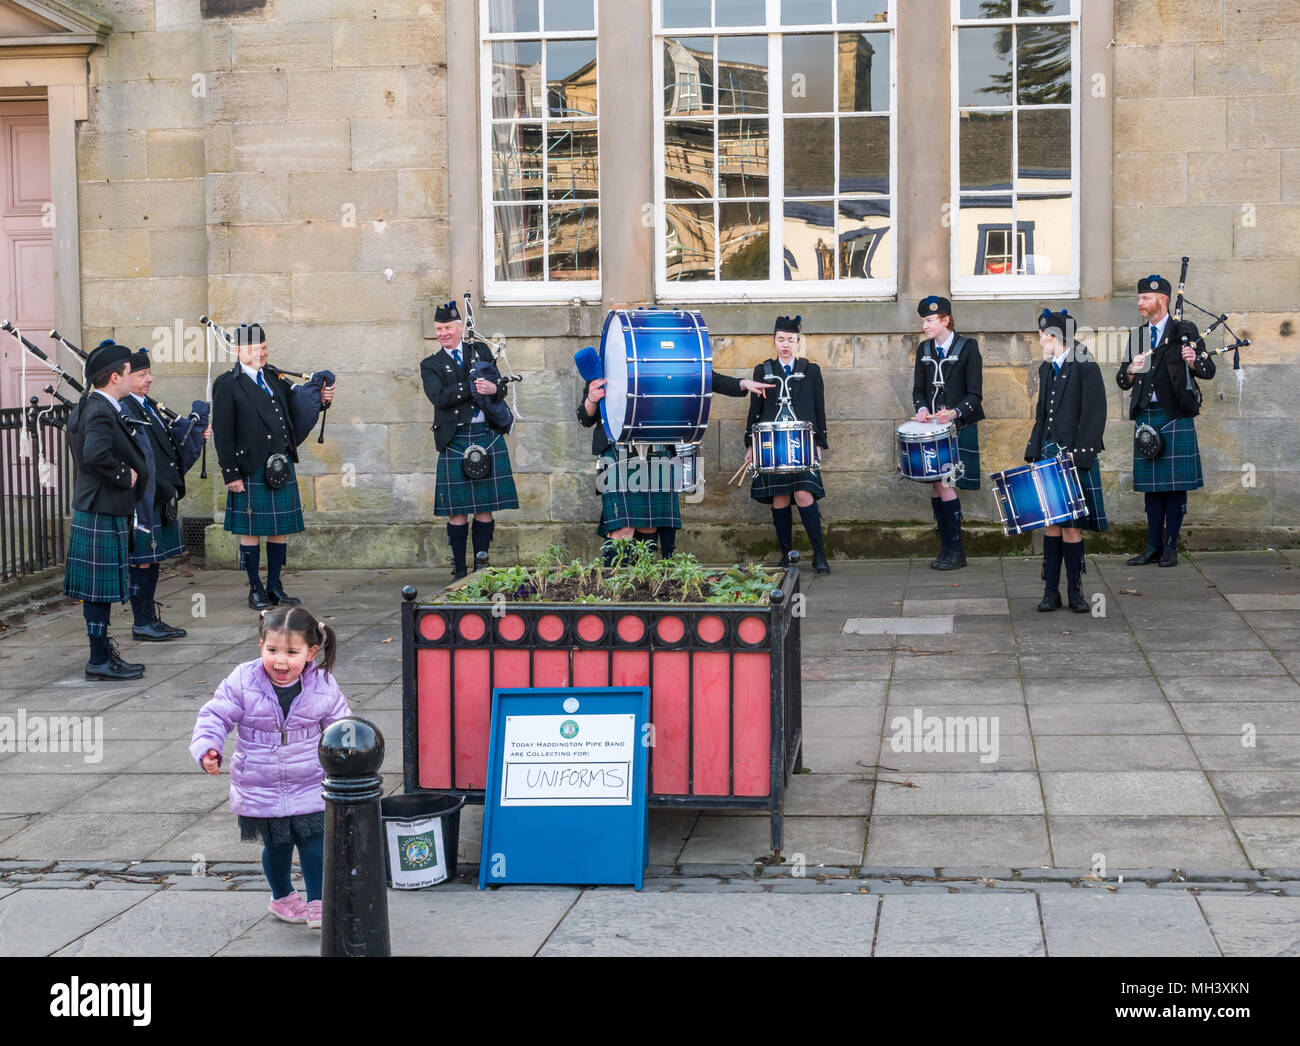 Jeune enfant donnant don à Haddington Pipe Band, Corn Exchange, Place d'Aubigny, Court Street, East Lothian, Scotland, UK Banque D'Images